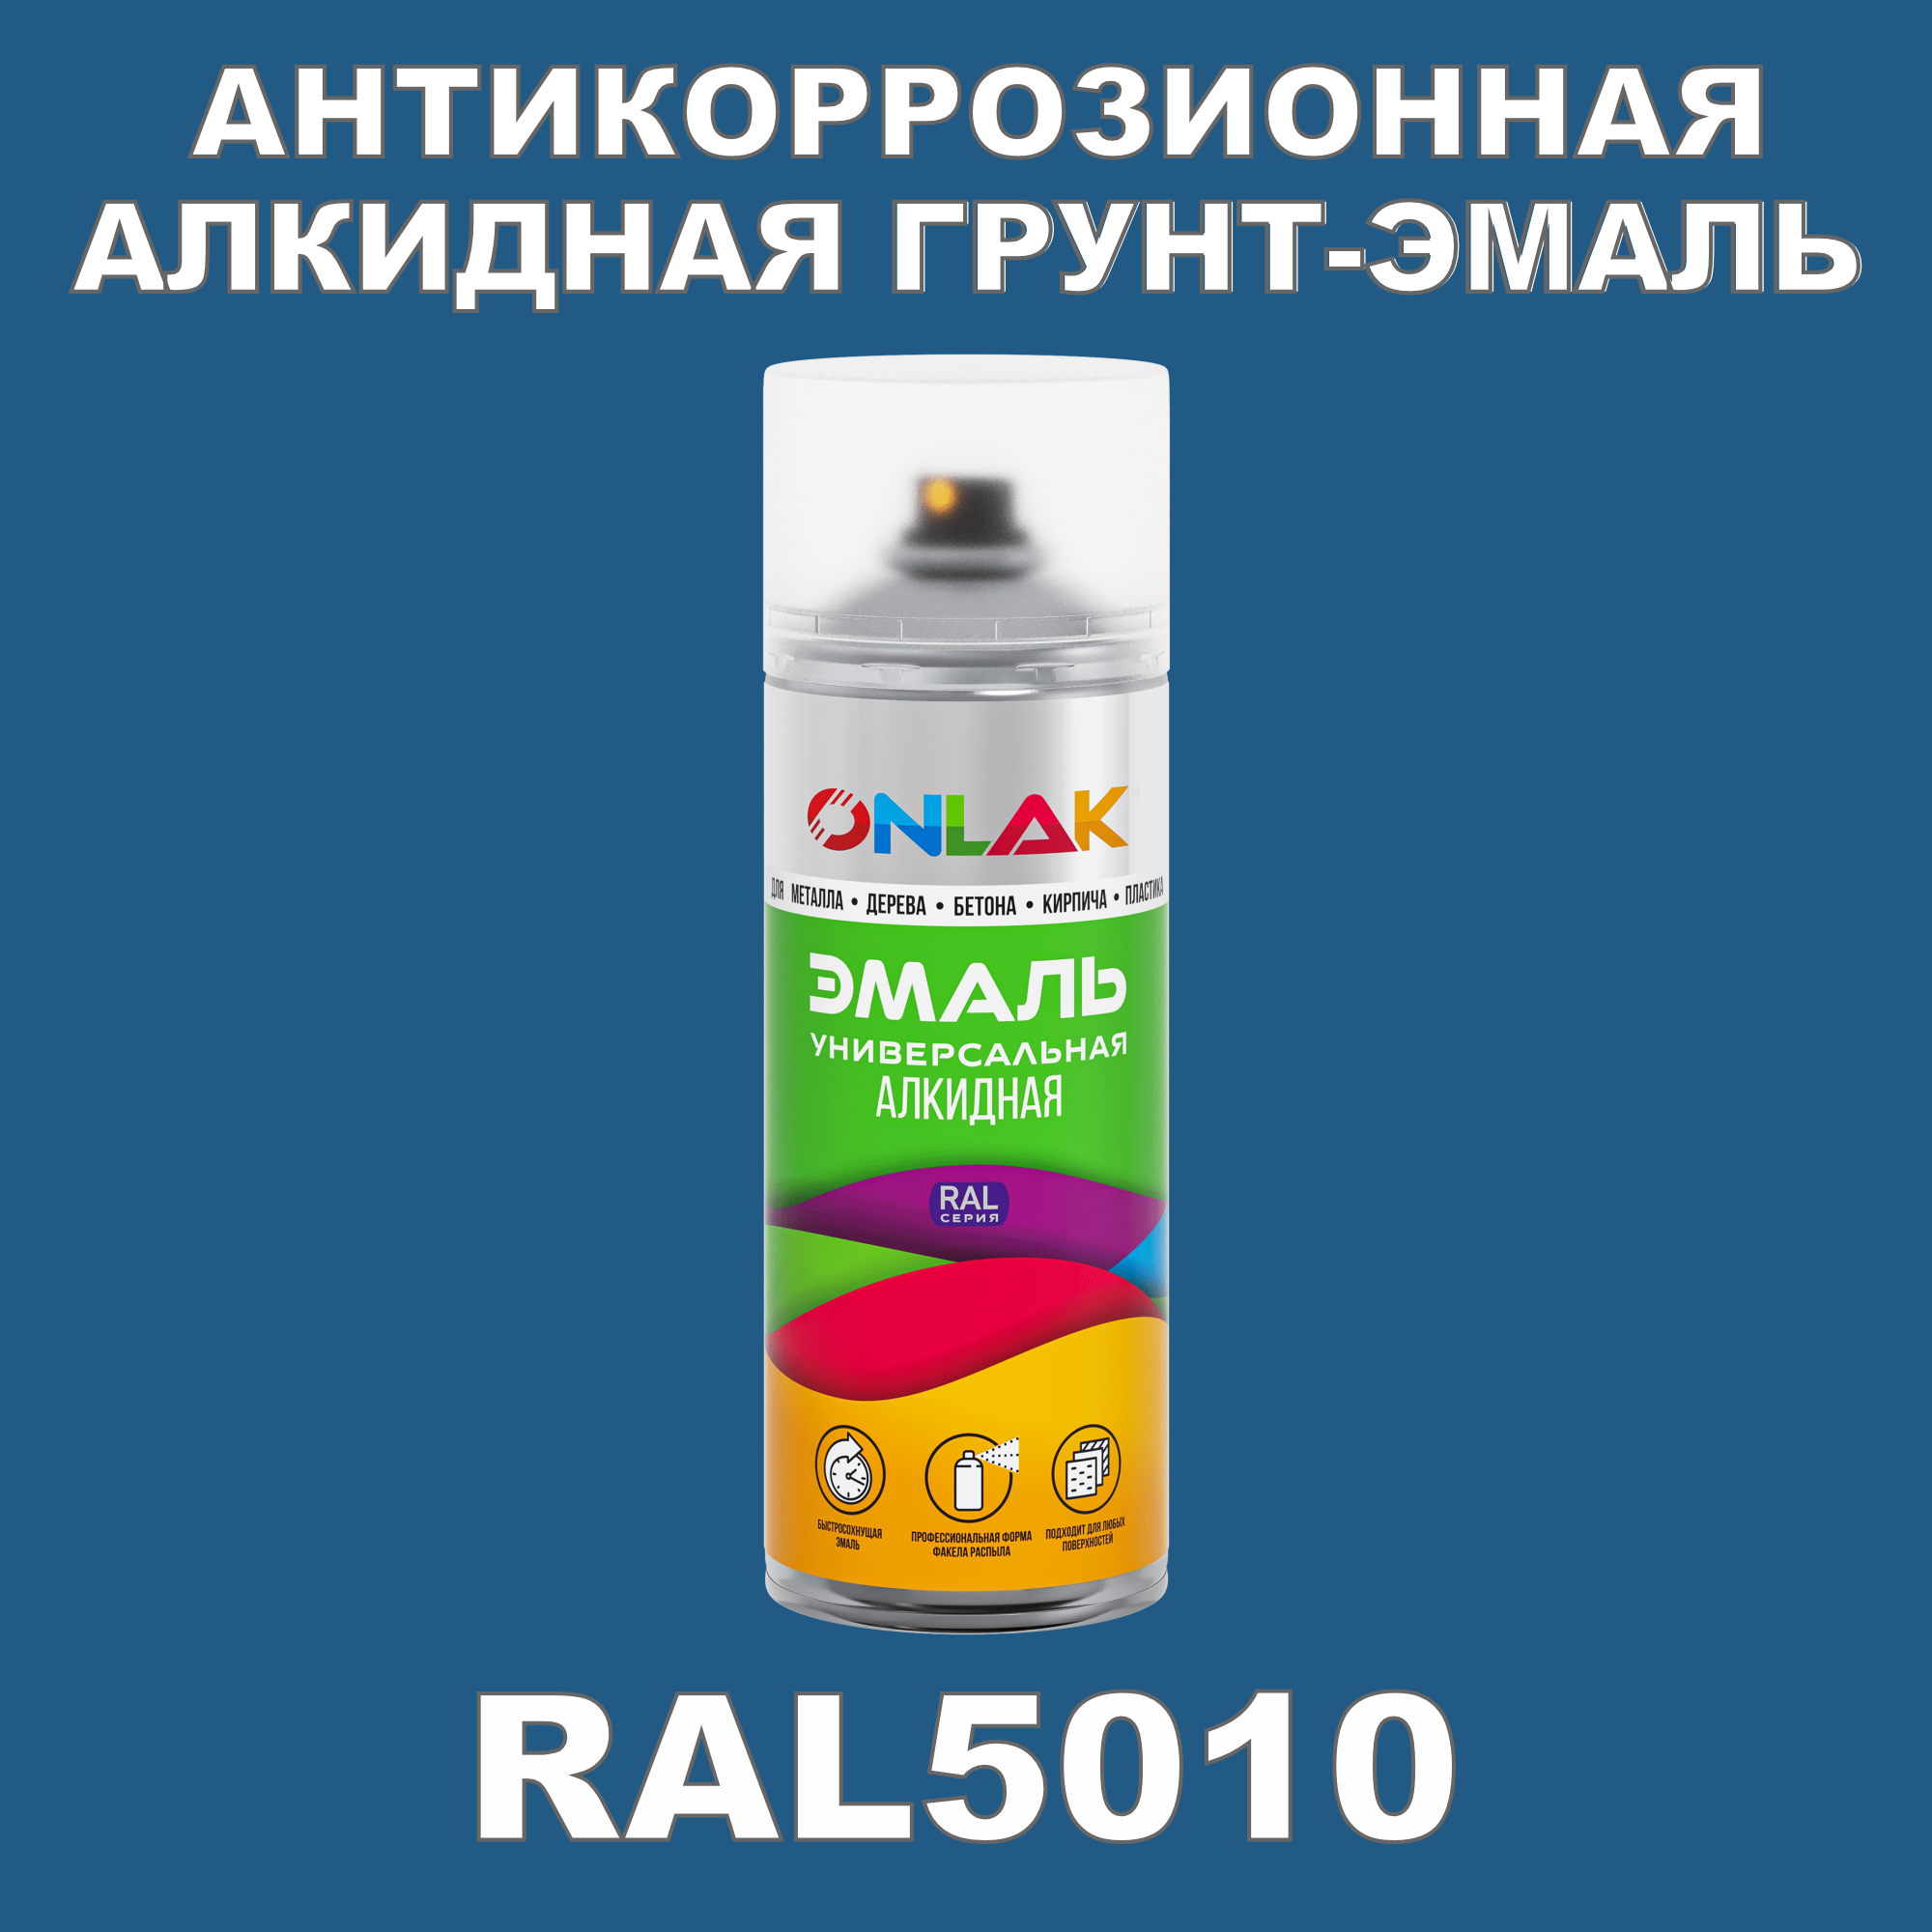 Антикоррозионная грунт-эмаль ONLAK RAL5010 полуматовая для металла и защиты от ржавчины